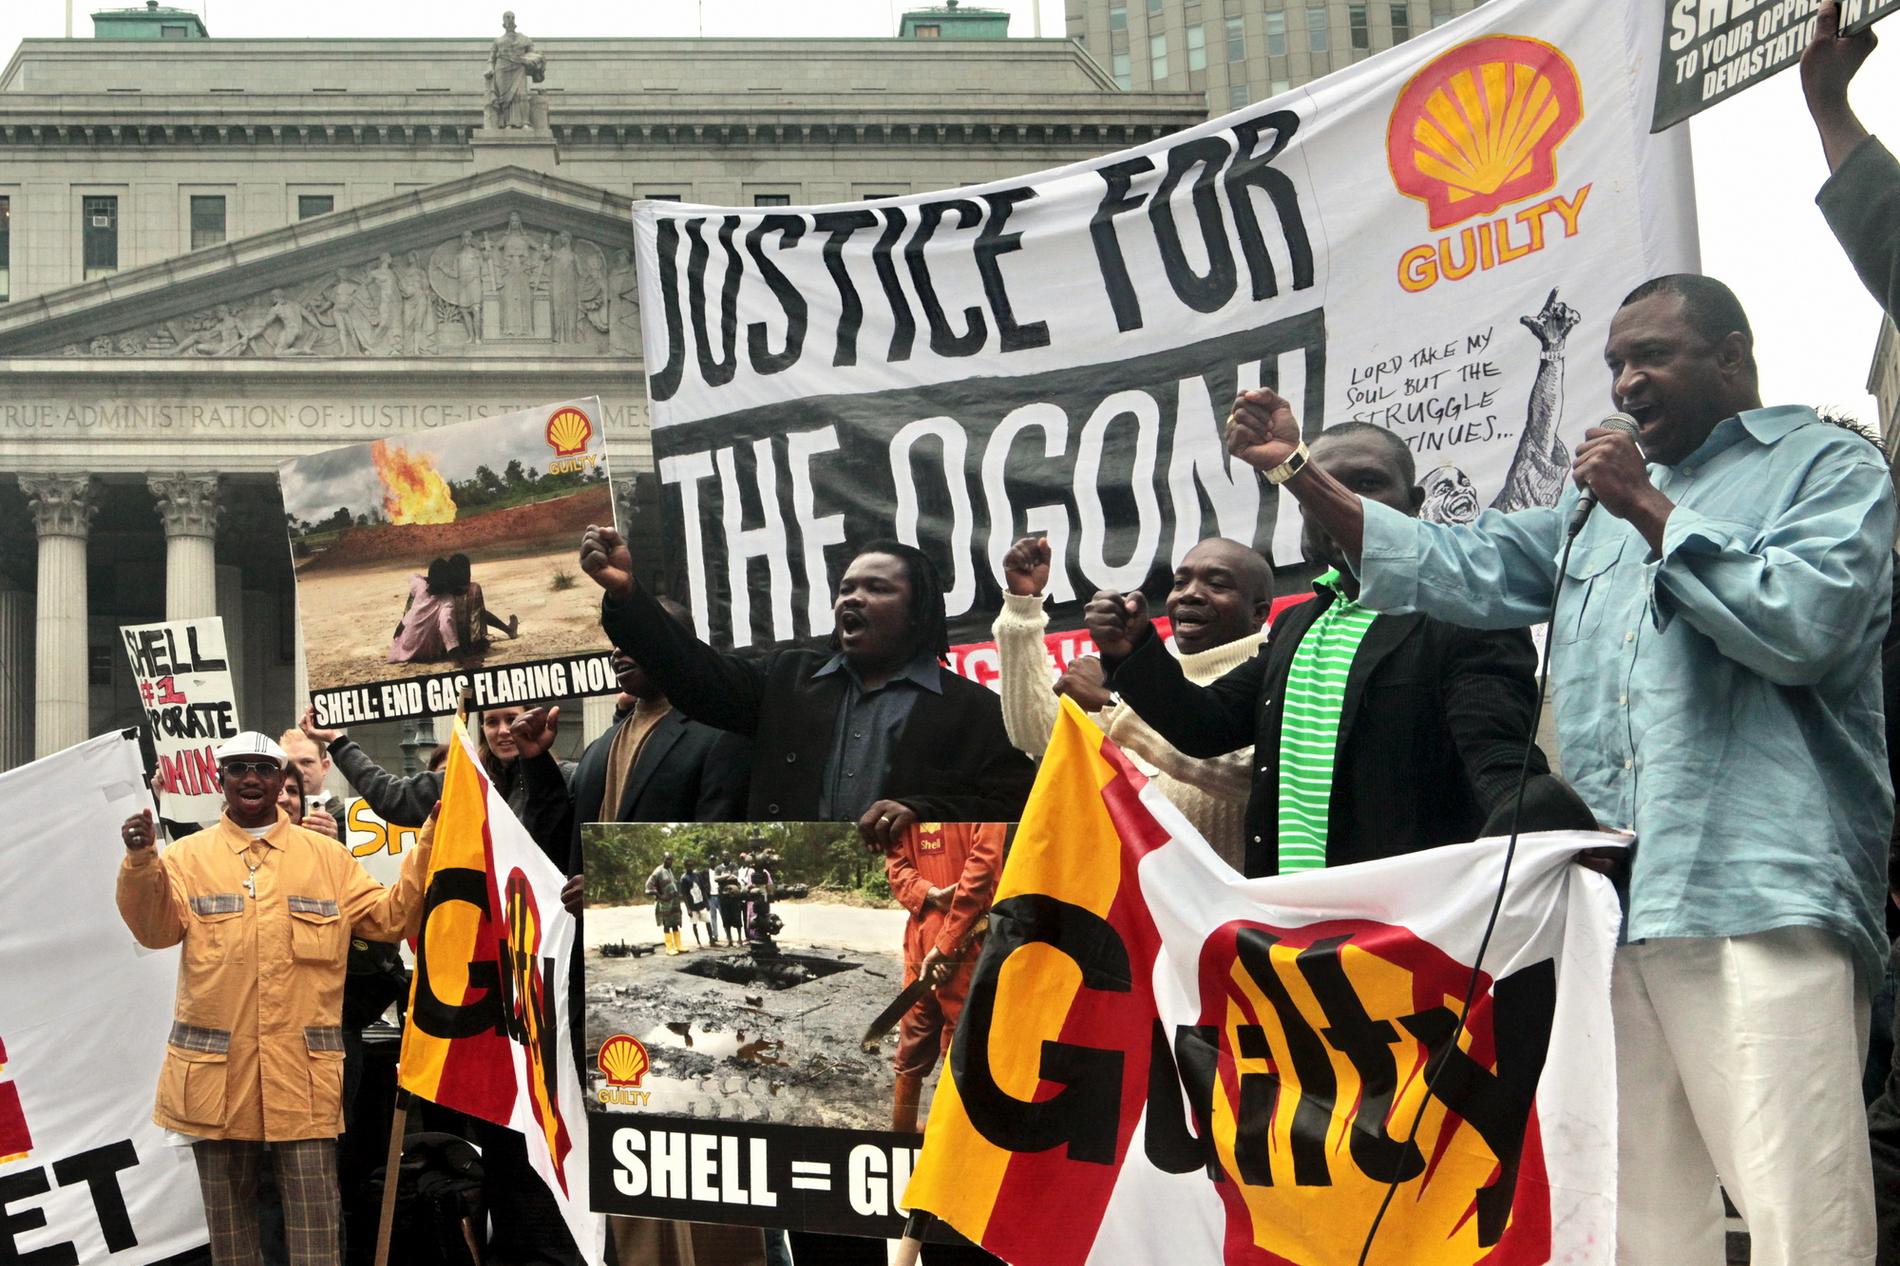 Shells verksamhet i Nigeria väckte stora proteströrelser i hela världen. Här i New York, 2009.